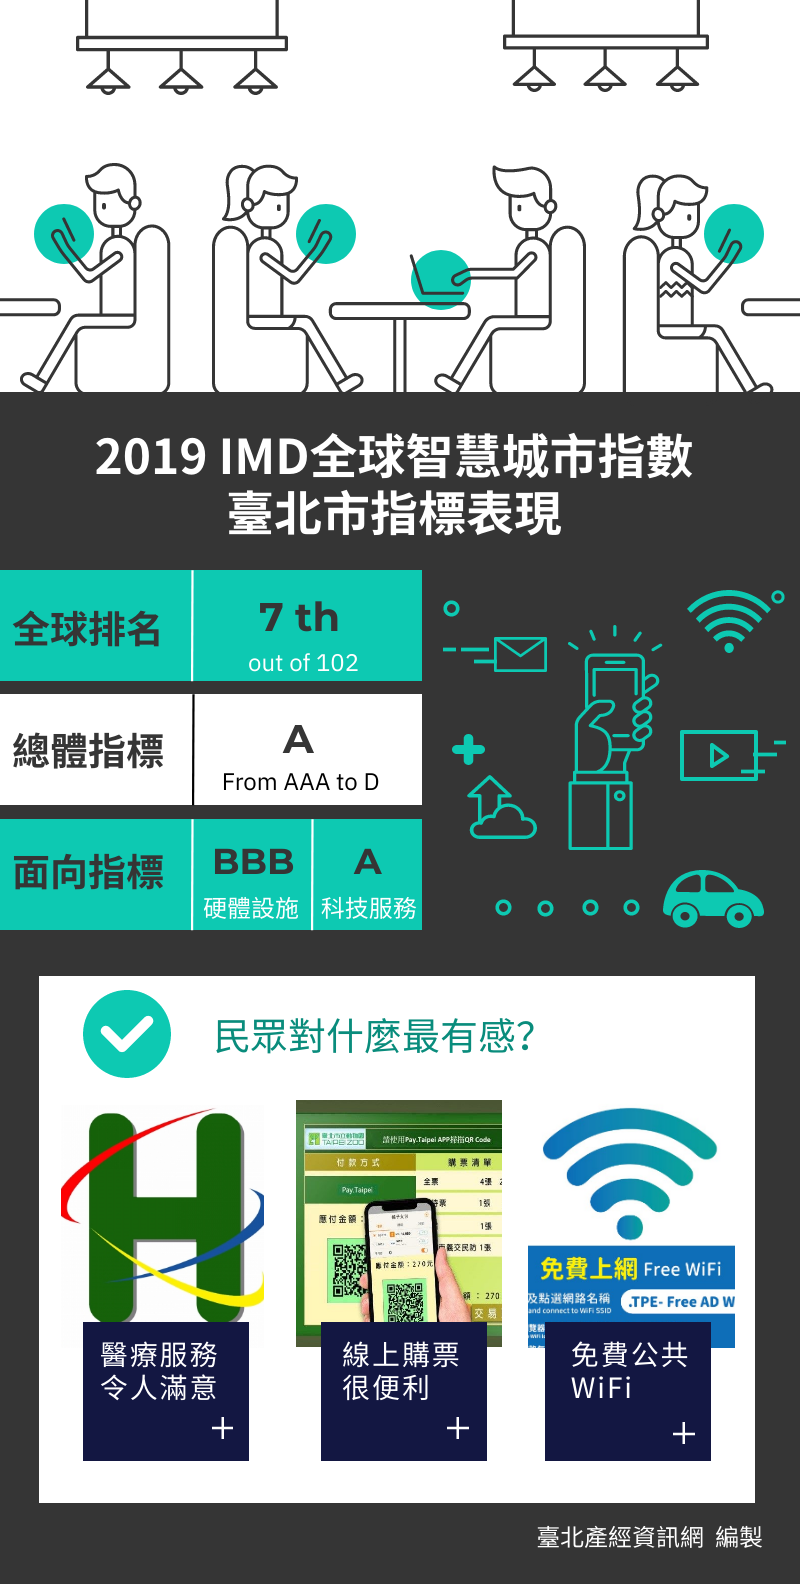 2019 IMD全球智慧城市指數—臺北市指標表現